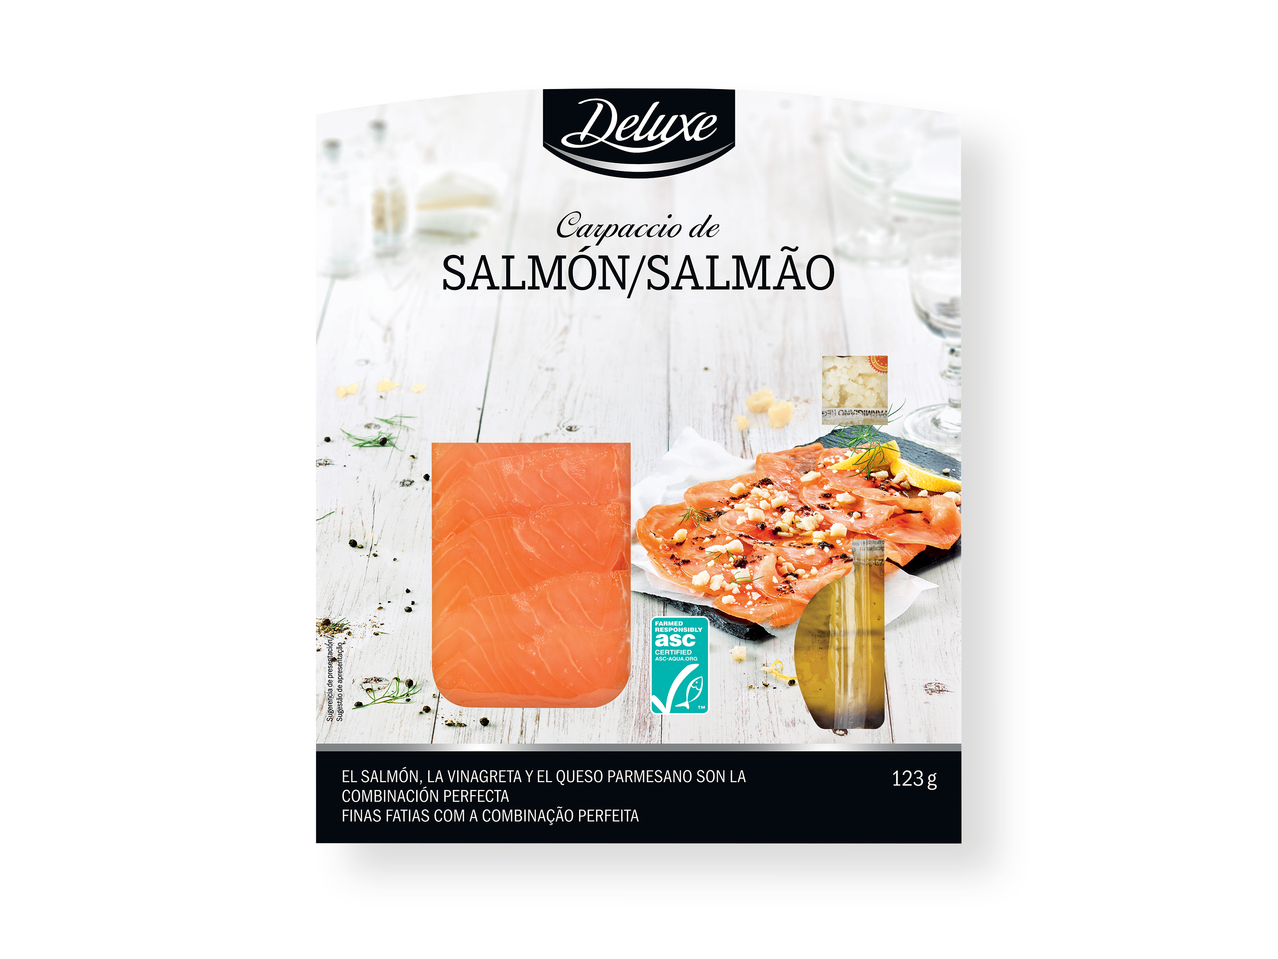 'Deluxe(R)' Carpaccio de salmón con virutas de parmesano